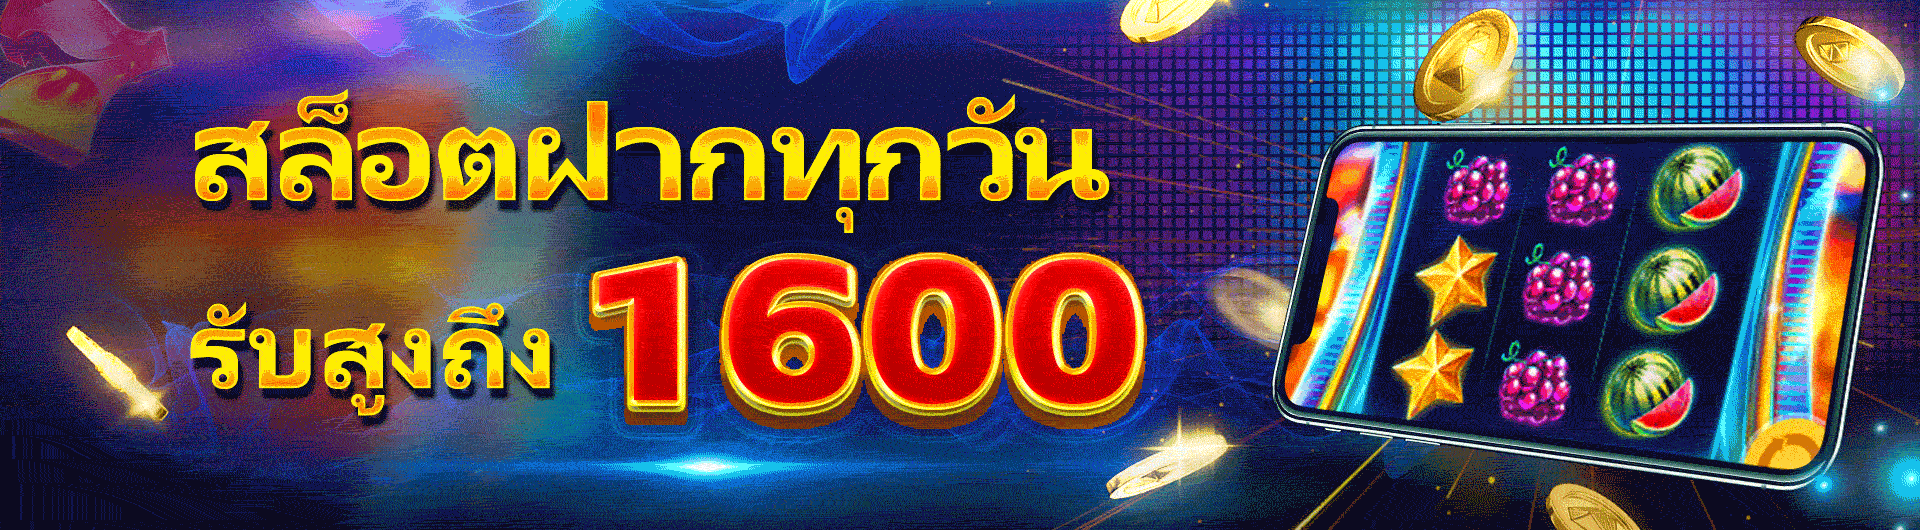 SBFPlay 99 ราชอาณาจักรไทย